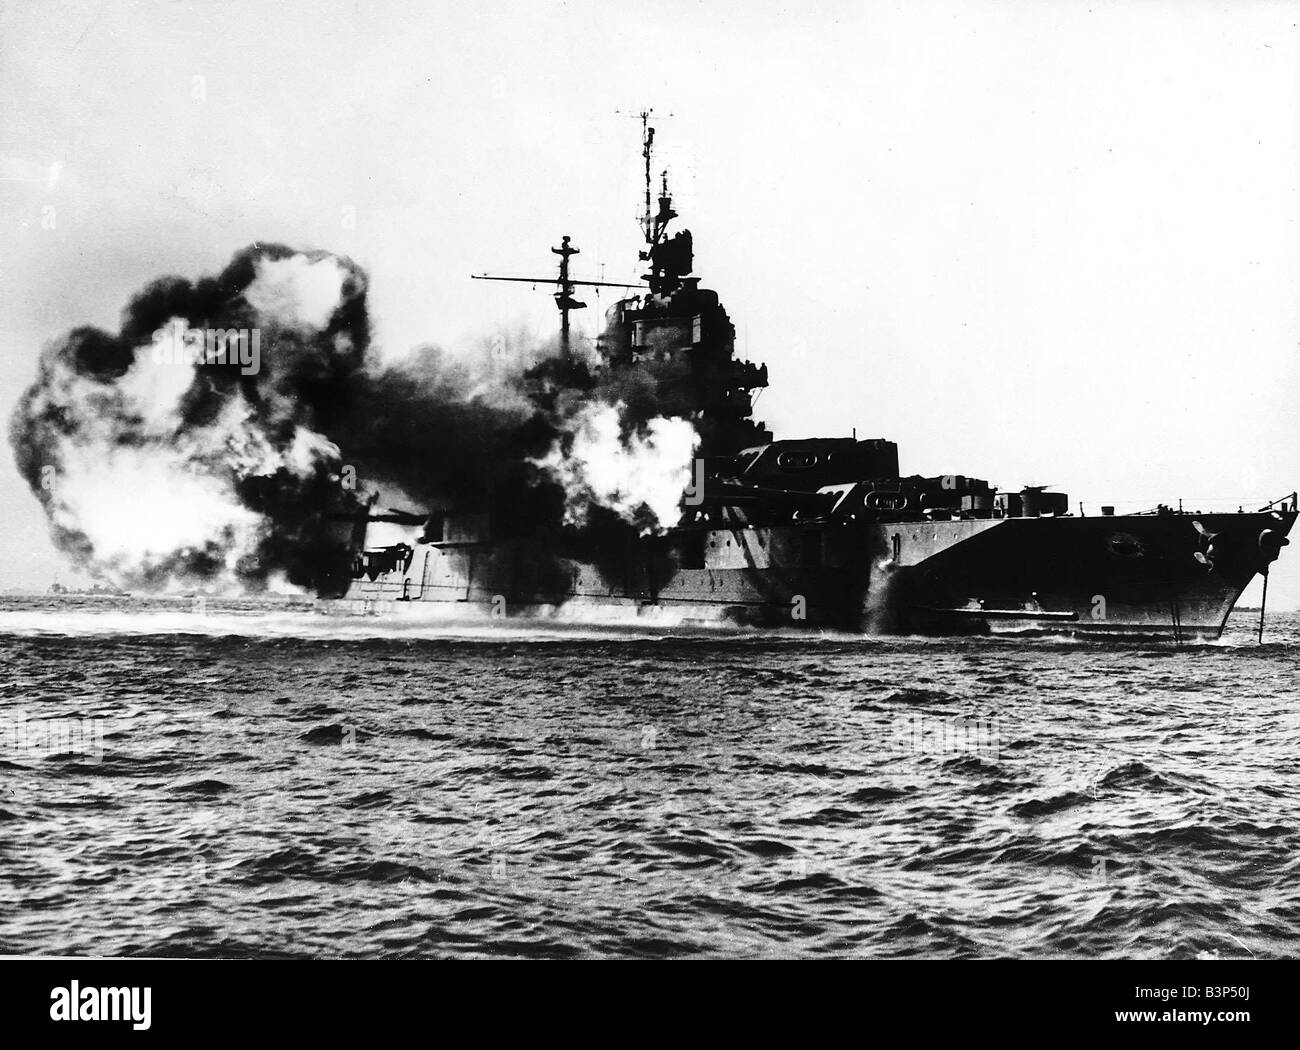 WW2 amerikanischen Schlachtschiff feuern am Mai 1945 Okinawa größte der Ryukyu-Inseln Okinawa ist weniger als 400 Meilen von der japanischen Hauptinseln und seine Gefangennahme gibt die Verbündeten Meer und Flugplätze im markanten Bereich des Feindes in Japan Formosa und der Küstenstreifen von China Stockfoto